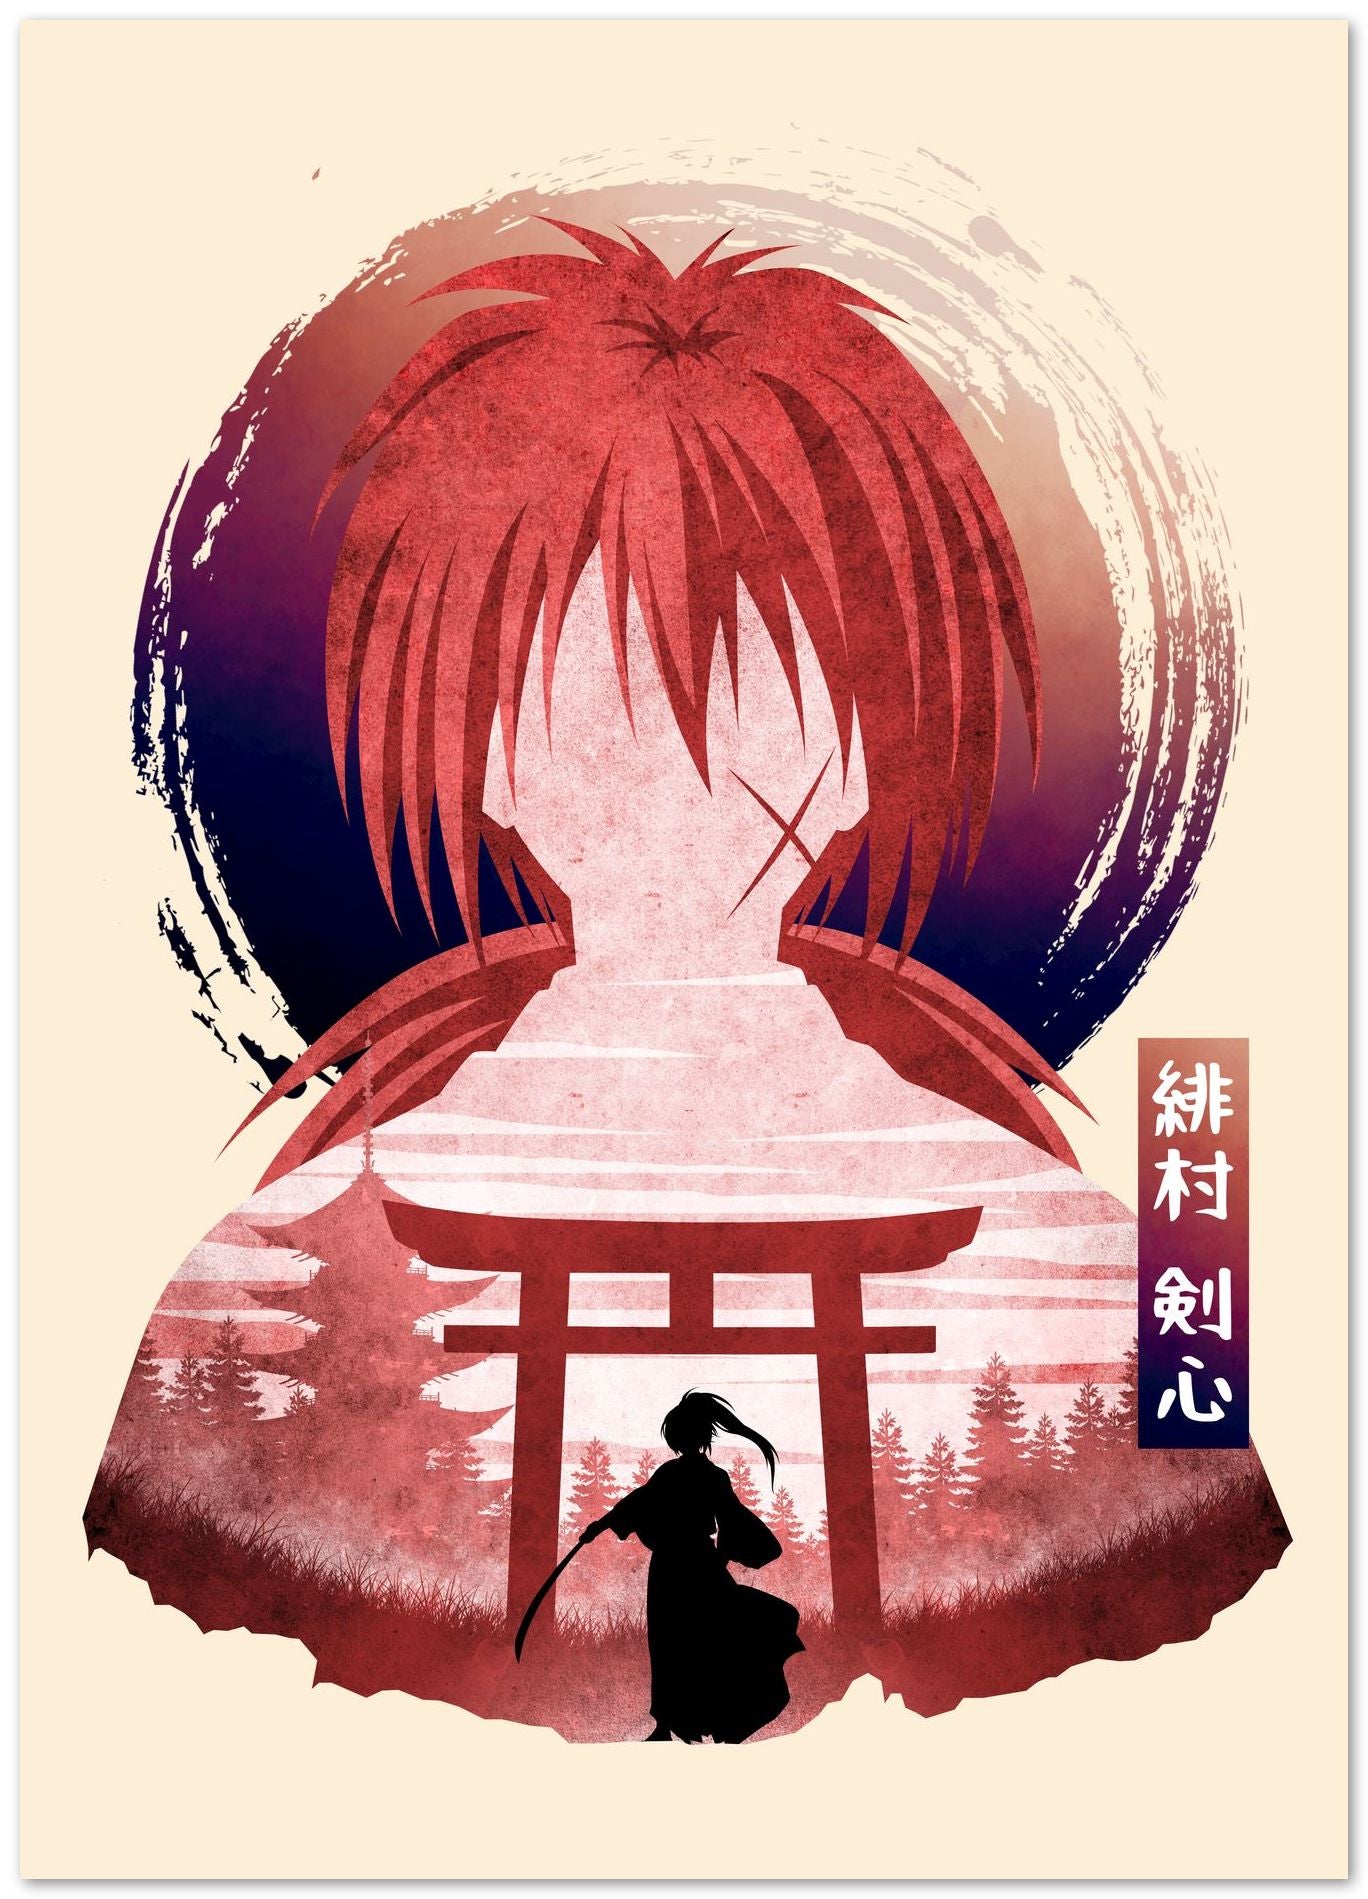 Kenshin - @saufahaqqi